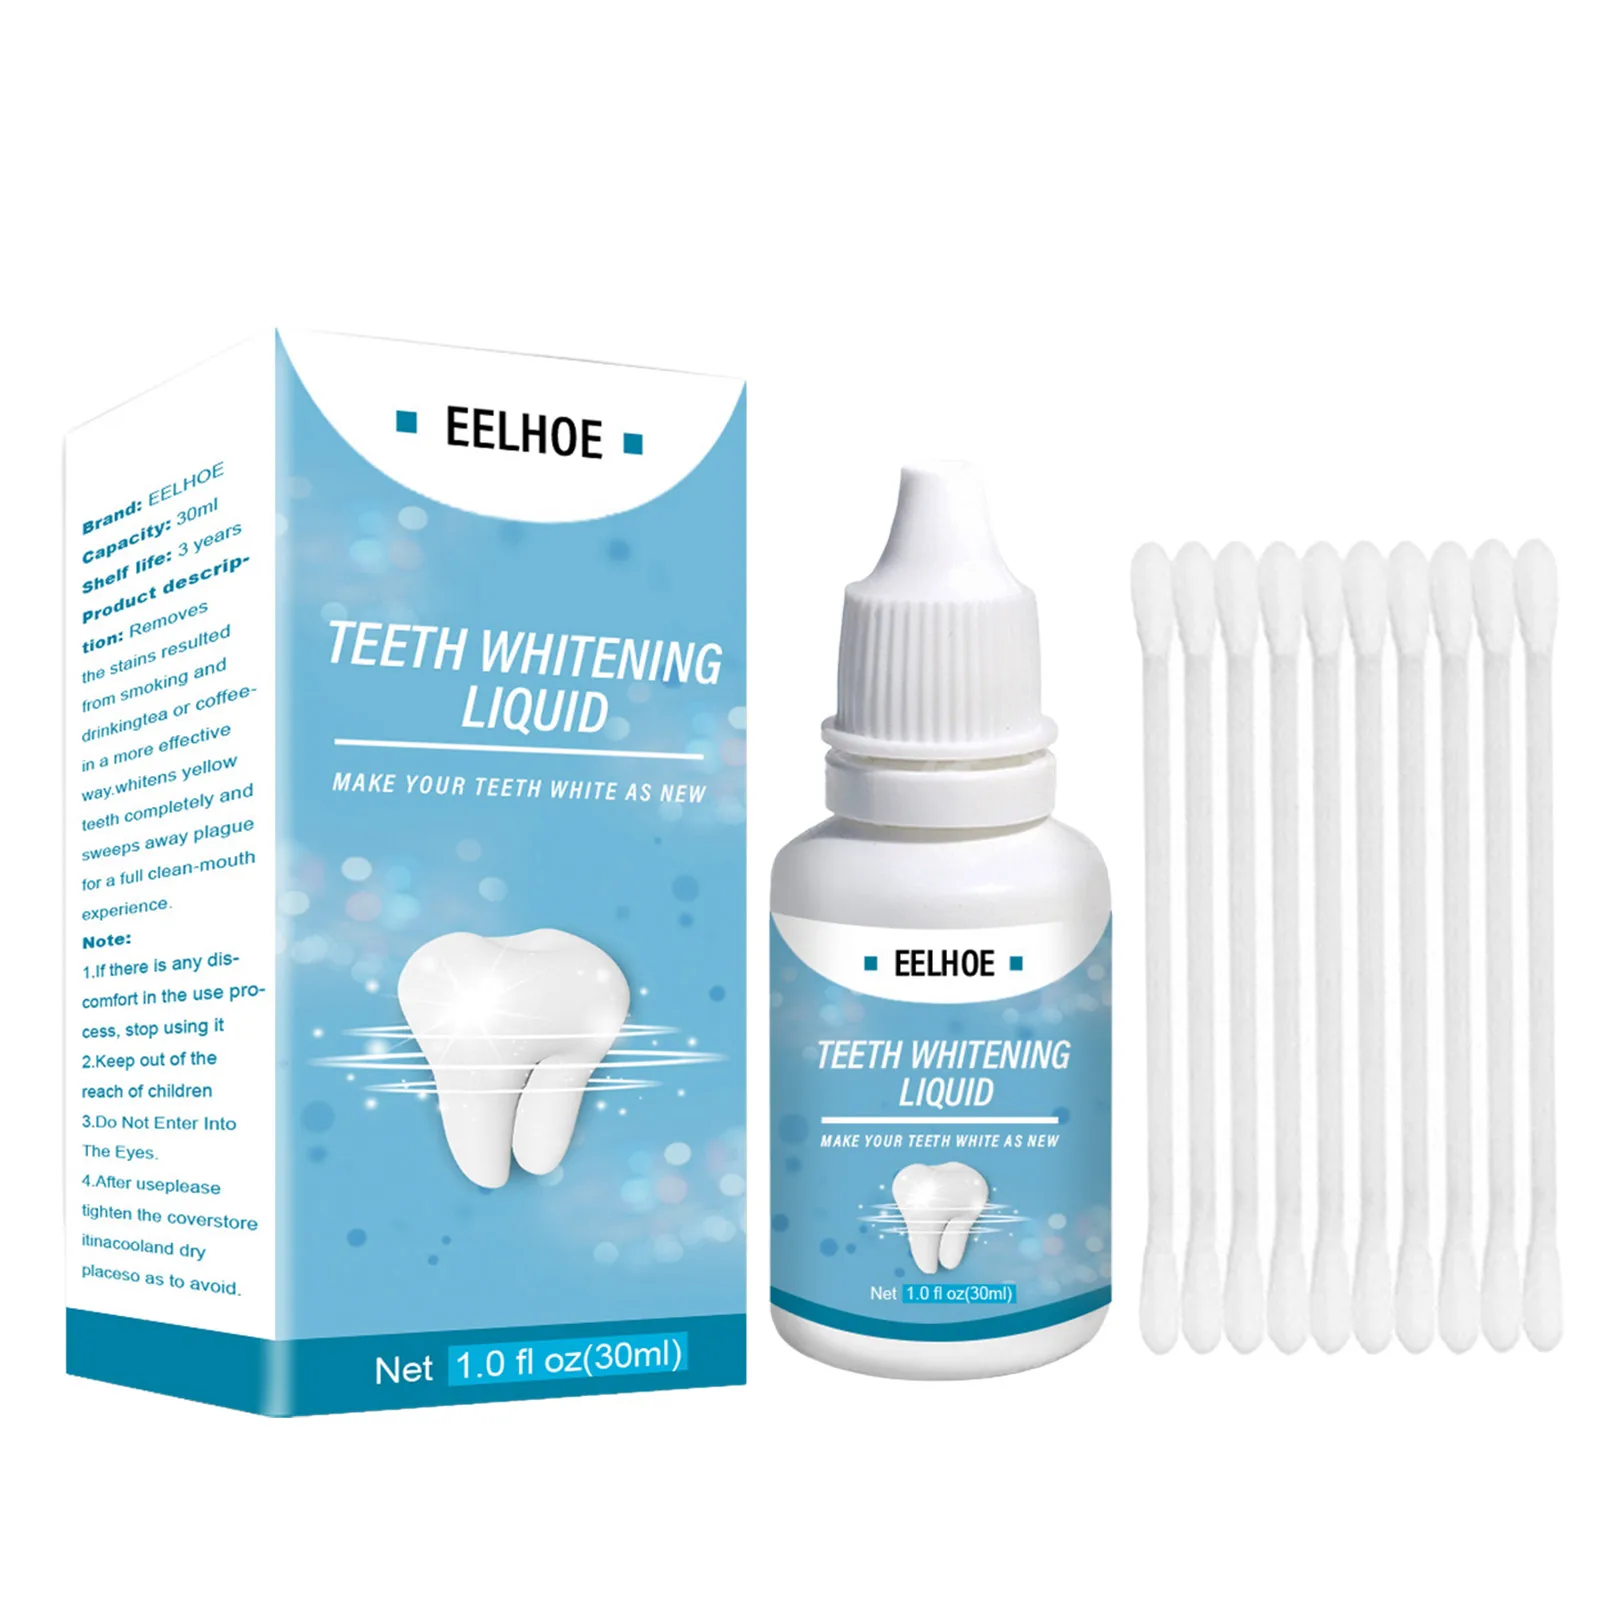 

Эссенция для отбеливания зубов, жидкая сыворотка для отбеливания зубов, эссенция для гигиены полости рта, чистящие сыворотки для отбеливания зубов